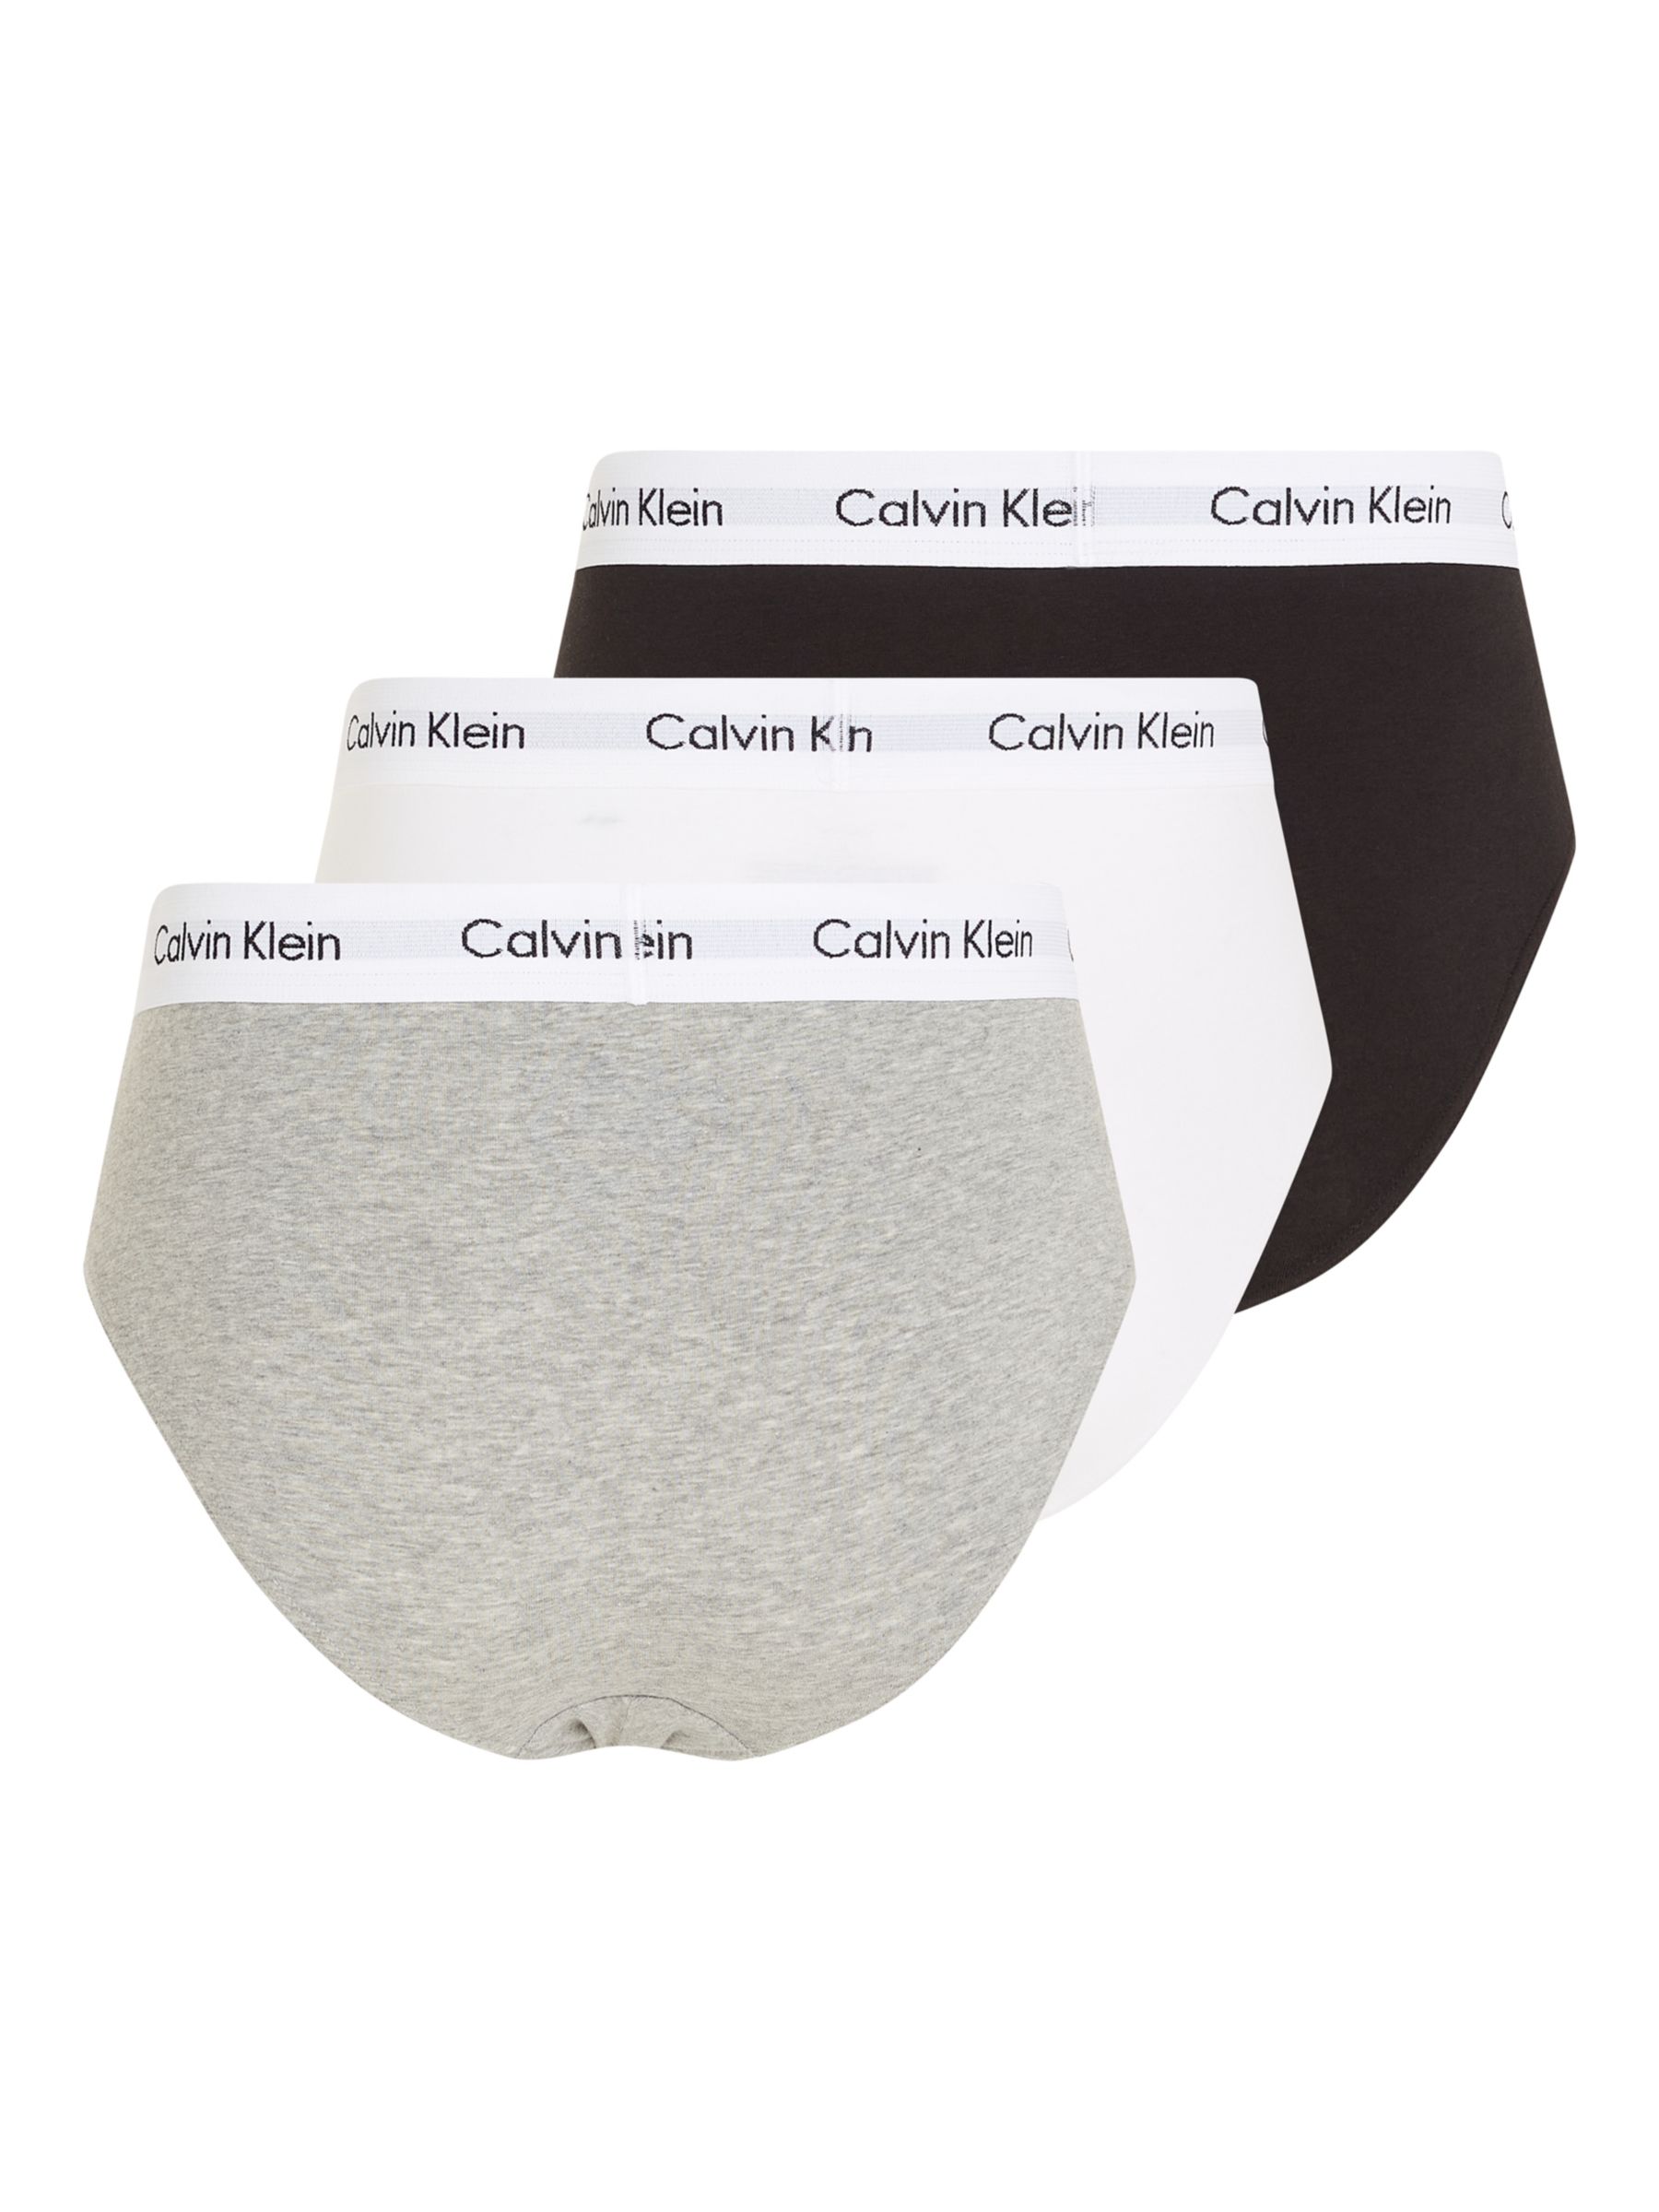 Calvin Klein Underwear Cotton Briefs, Pack of 3, Black/White/Grey at John  Lewis & Partners